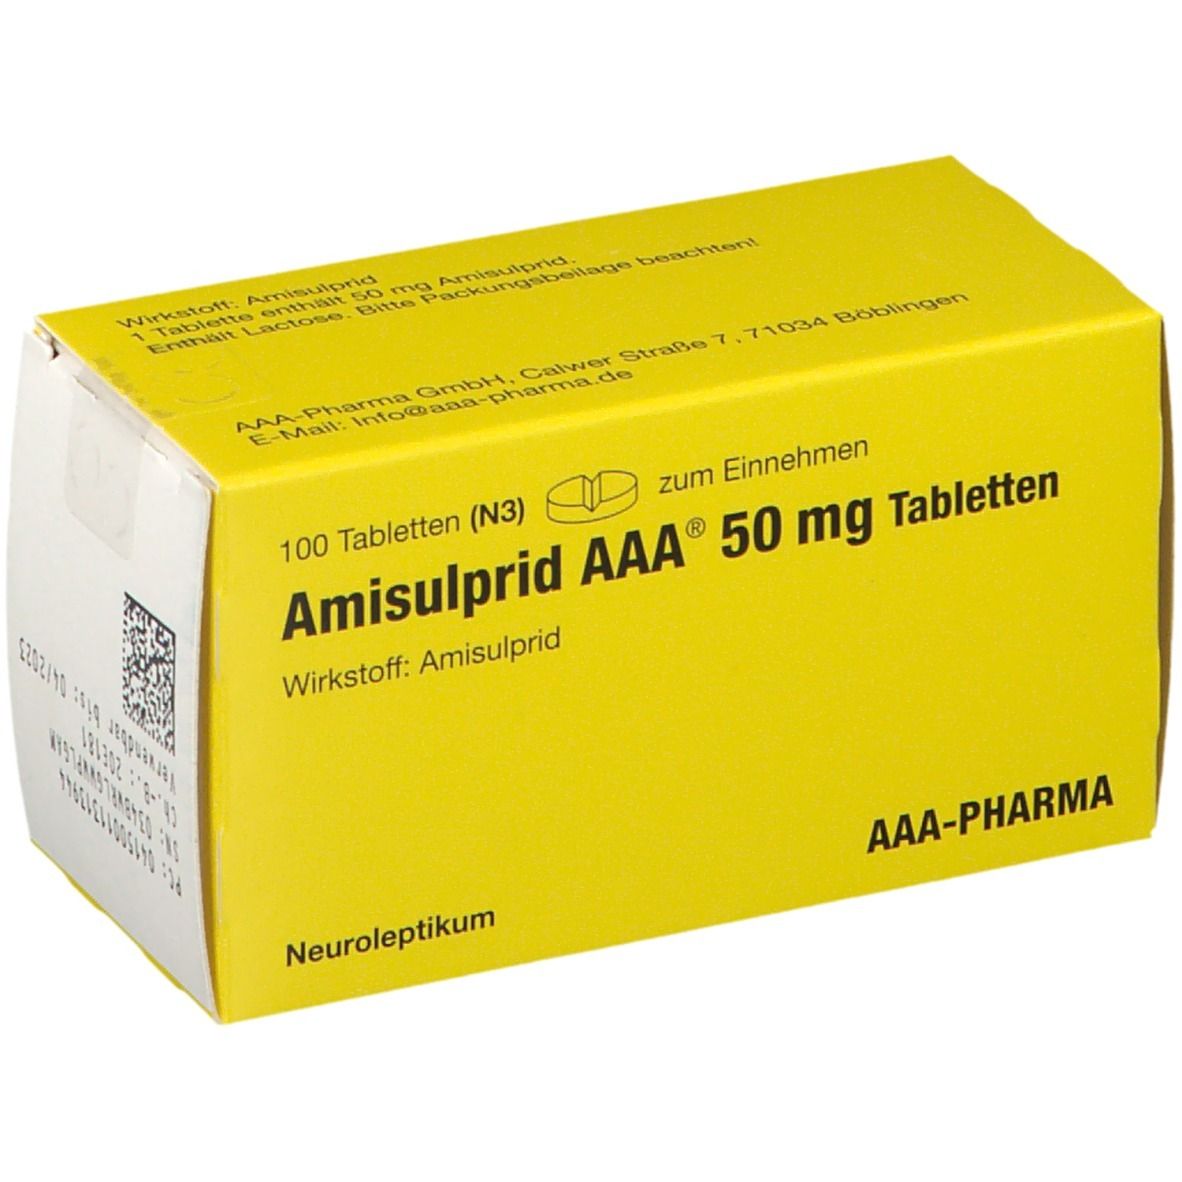 Amisulprid AAA® 50Mg